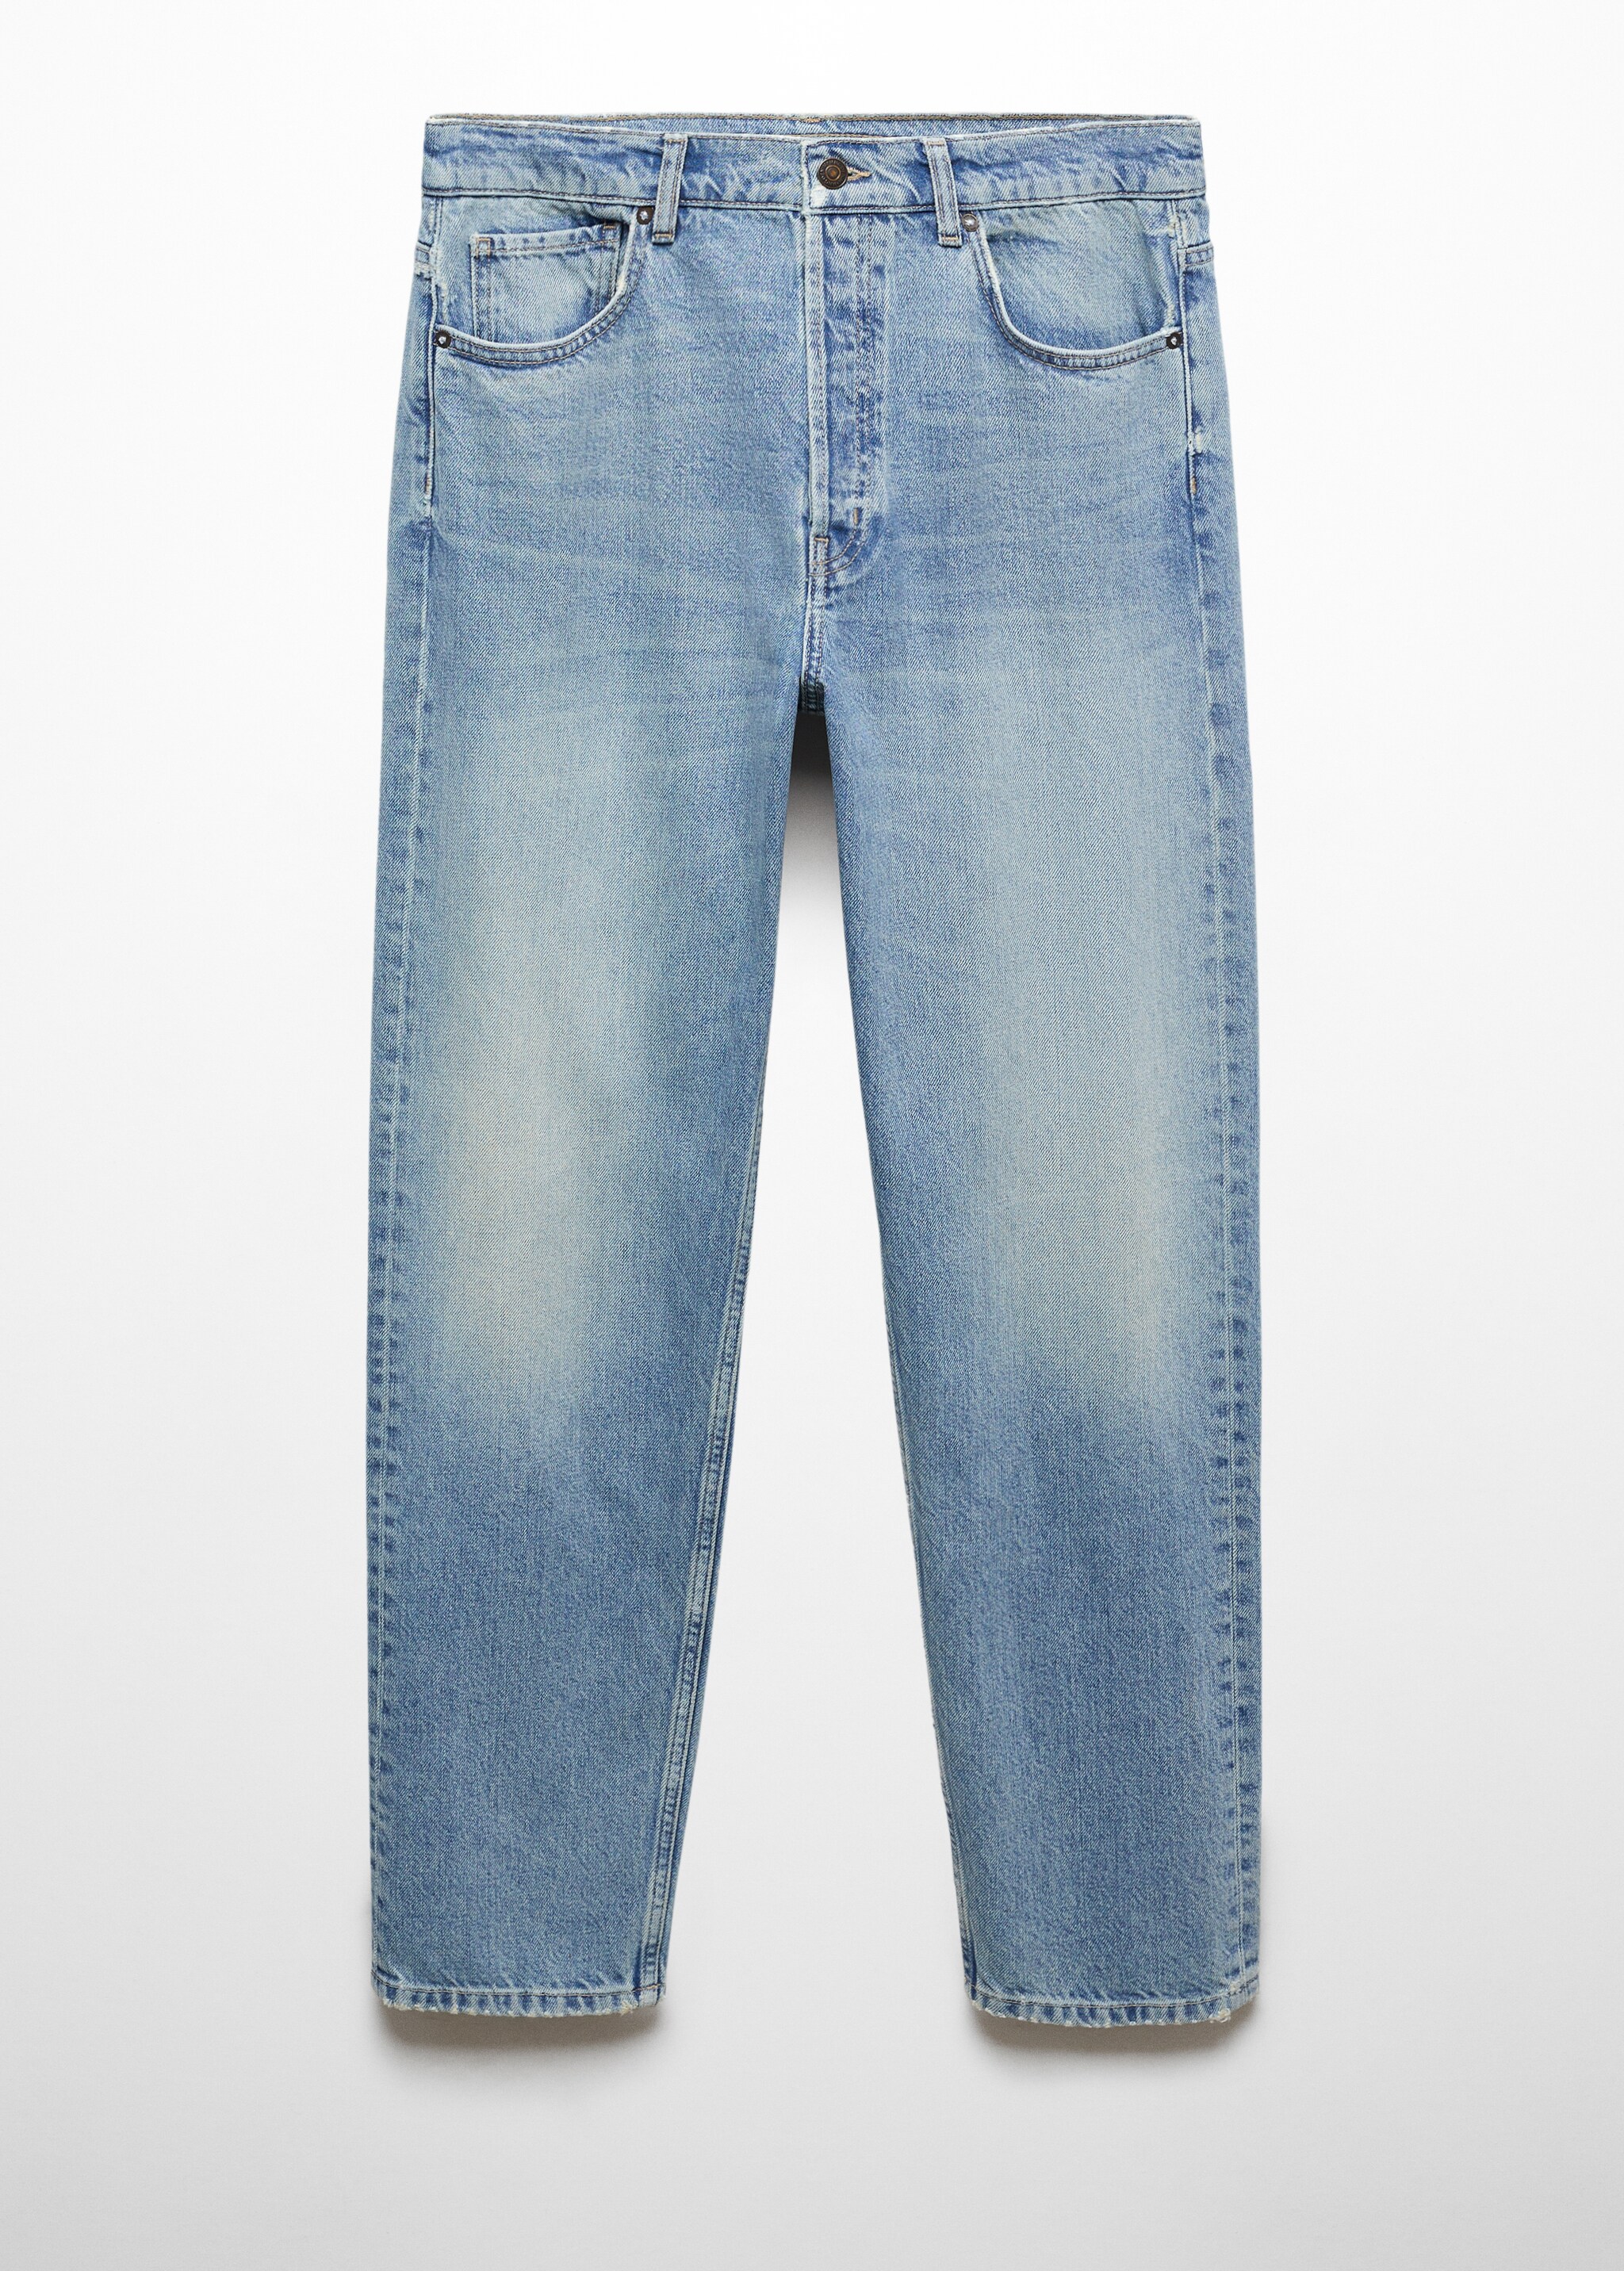 سروال جينز مغسول متوسط ذو مقاس مريح - منتج دون نموذج